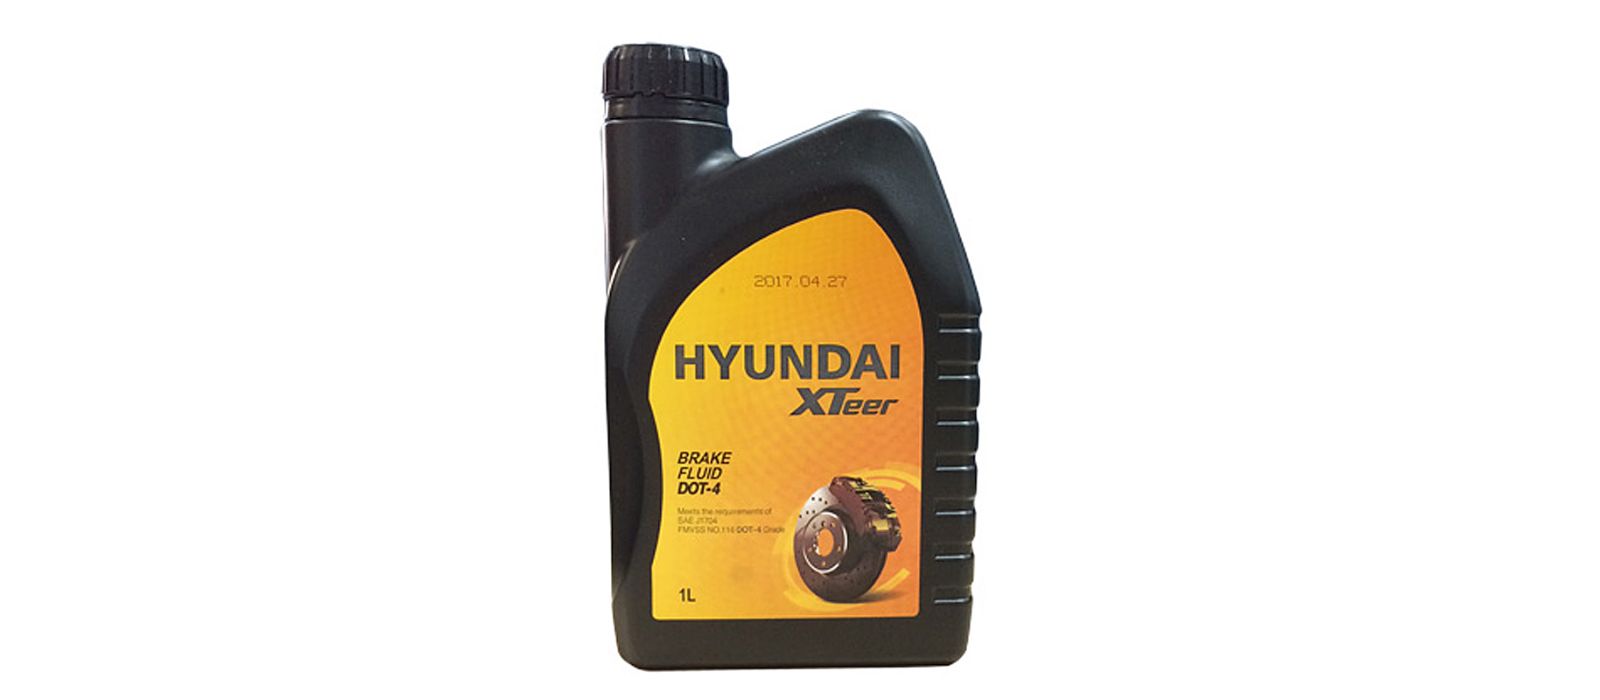 Тормозная жидкость HYUNDAI XTeer 2010853 DOT-4